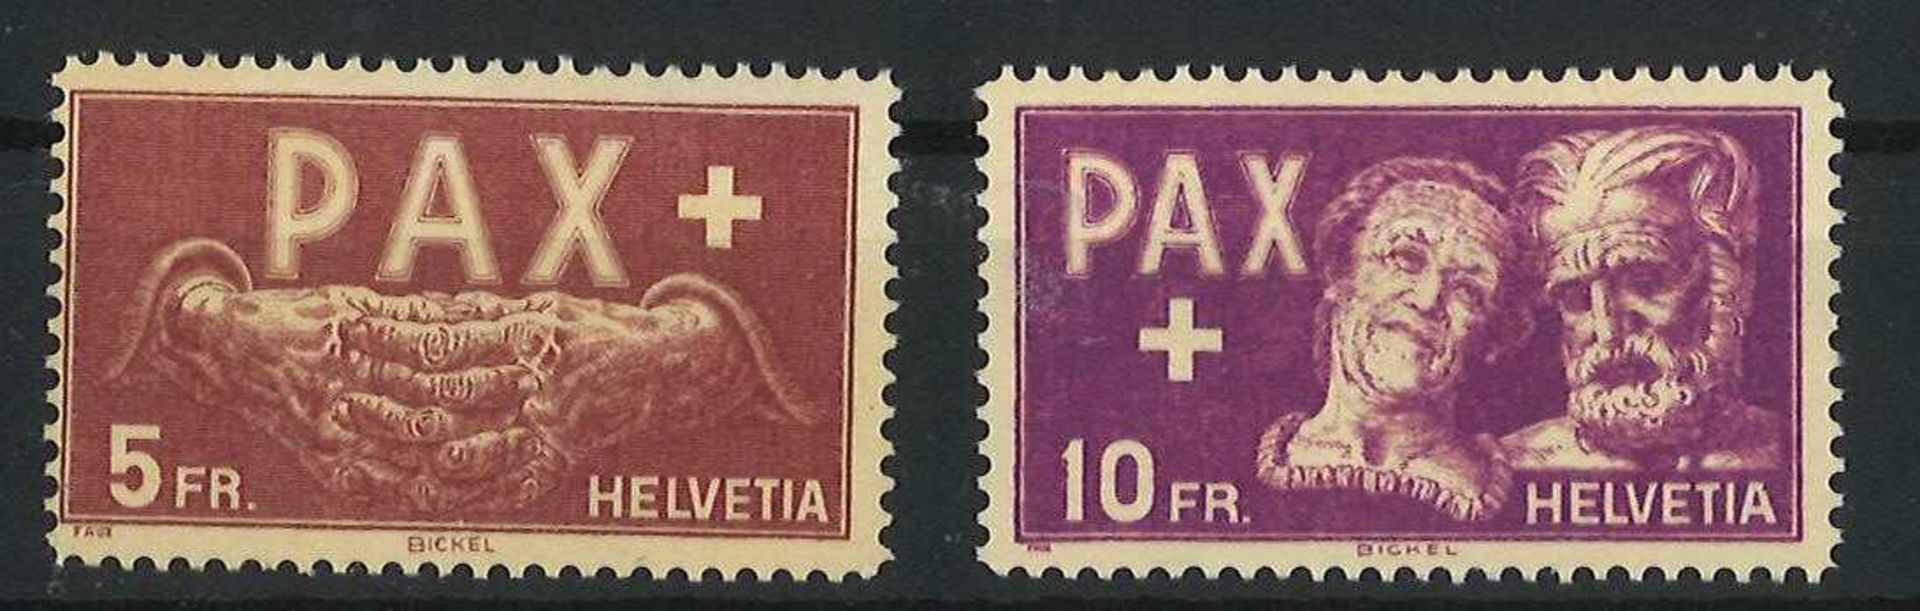 Schweiz 1945, Mi Nr. 458-459, Pax Ausgabe zum Waffenstillstand, postfrischSwitzerland 1945, Mi No.